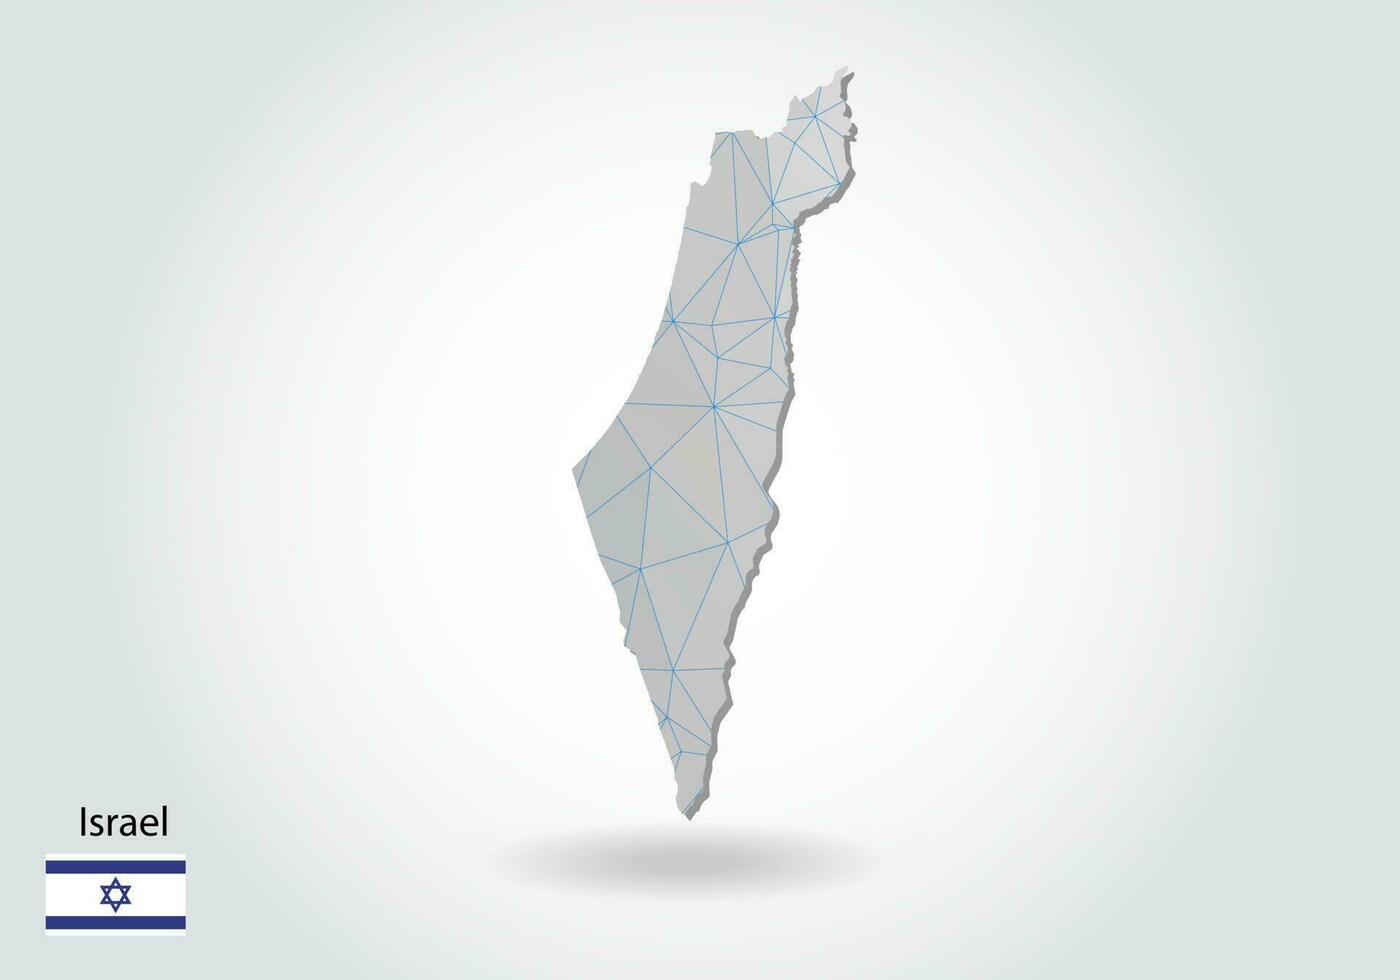 mappa vettoriale di israele con design a triangoli alla moda in stile poligonale su sfondo scuro, forma della mappa in moderno stile artistico 3d con taglio di carta. disegno di ritaglio di carta a strati.